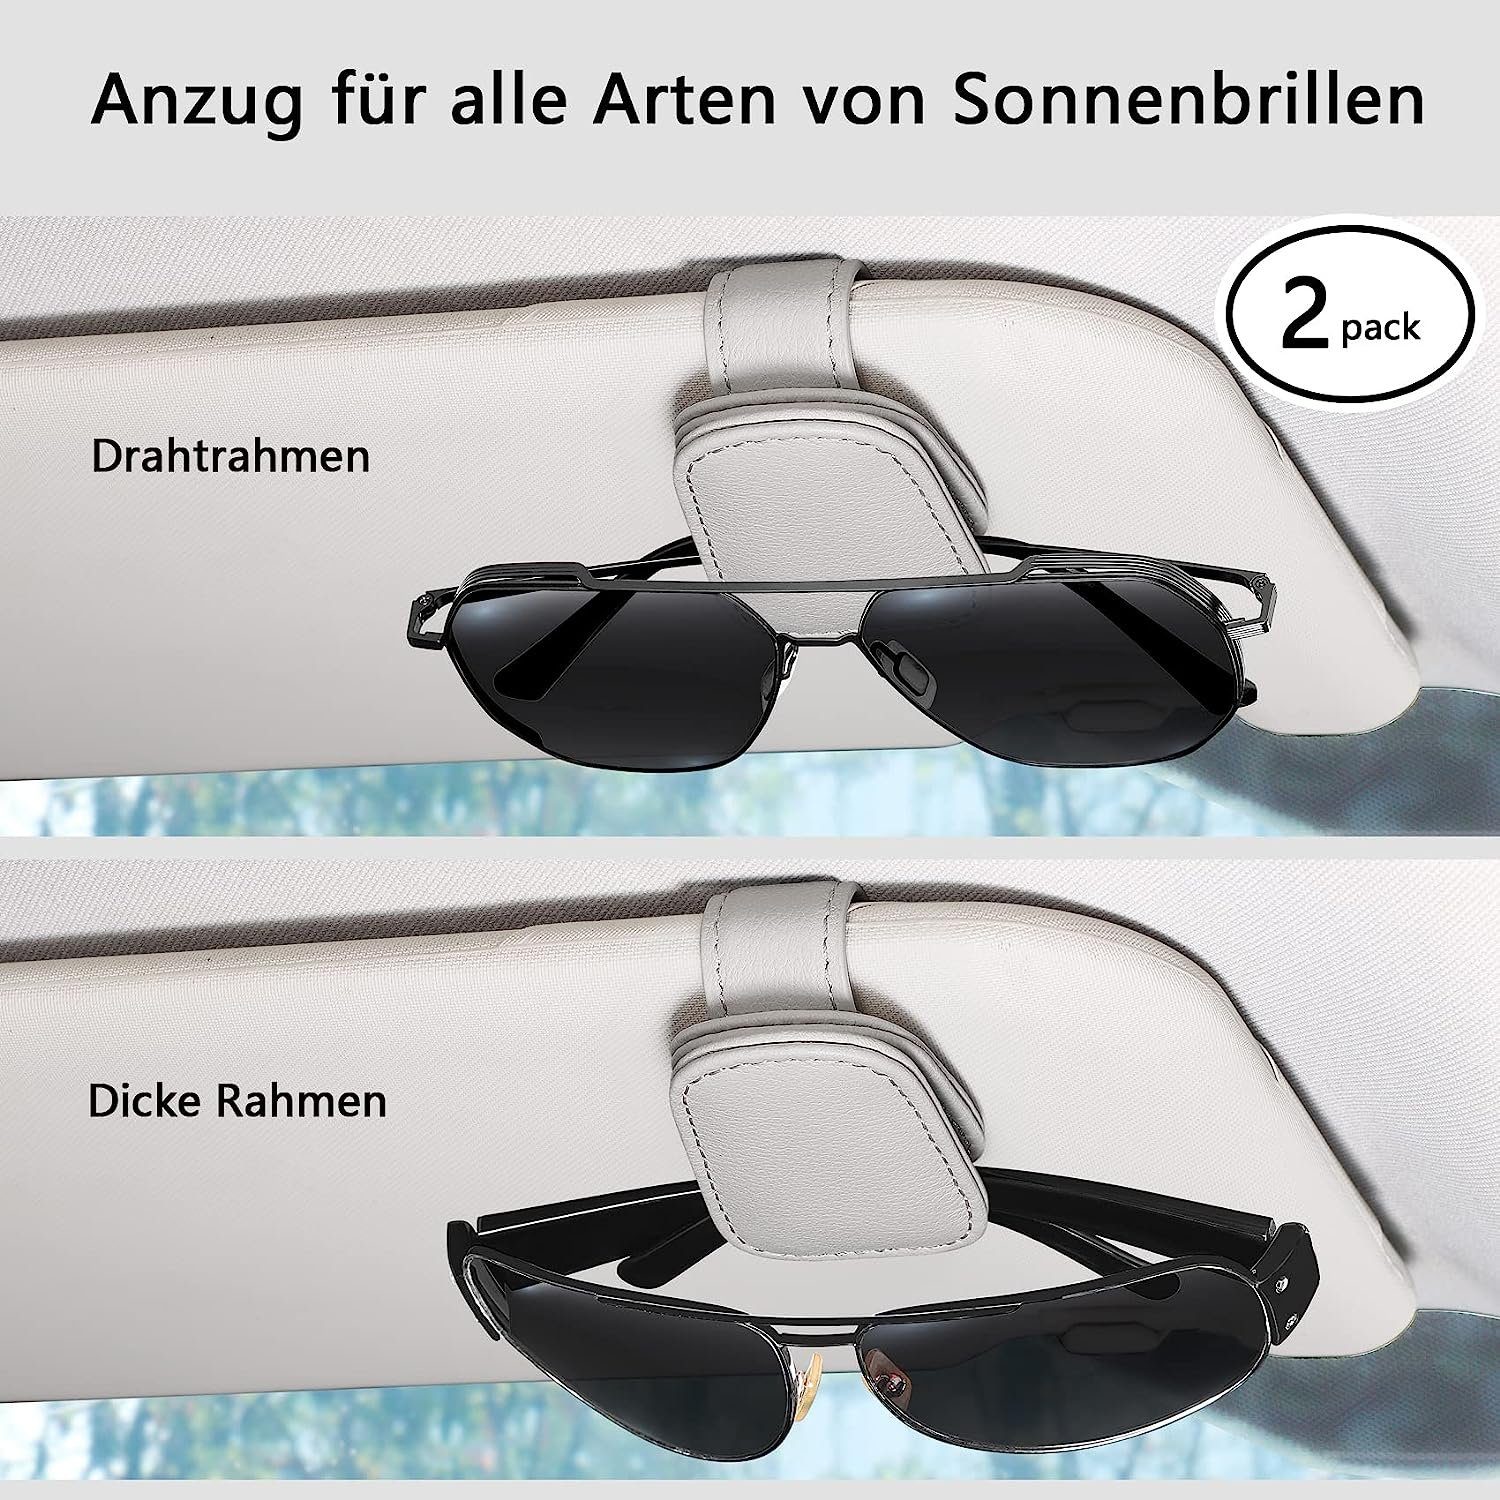 NUODWELL Autosonnenschutz 2 Pack Auto Sonnenblende, Visier Sonnenbrillenhalterung Grau Brillenhalter